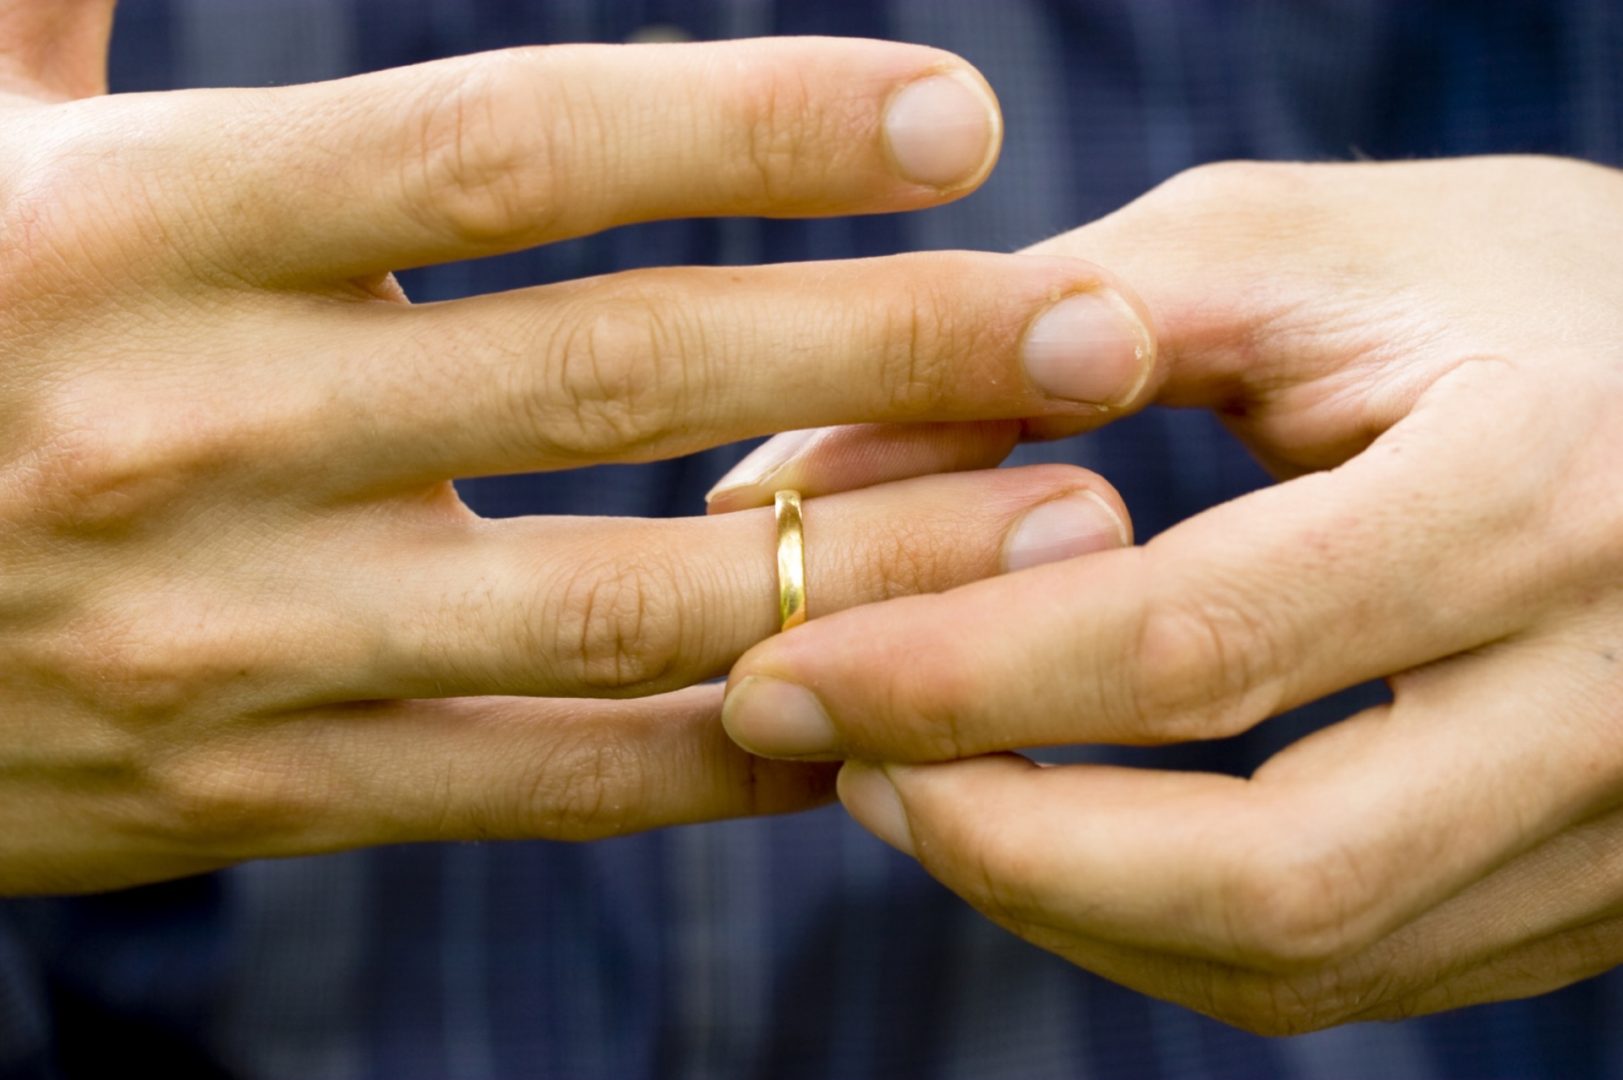 Biblia ii permite unei persoane casatorite sa puna capat legaturii conjugale pe motivul infidelitatii